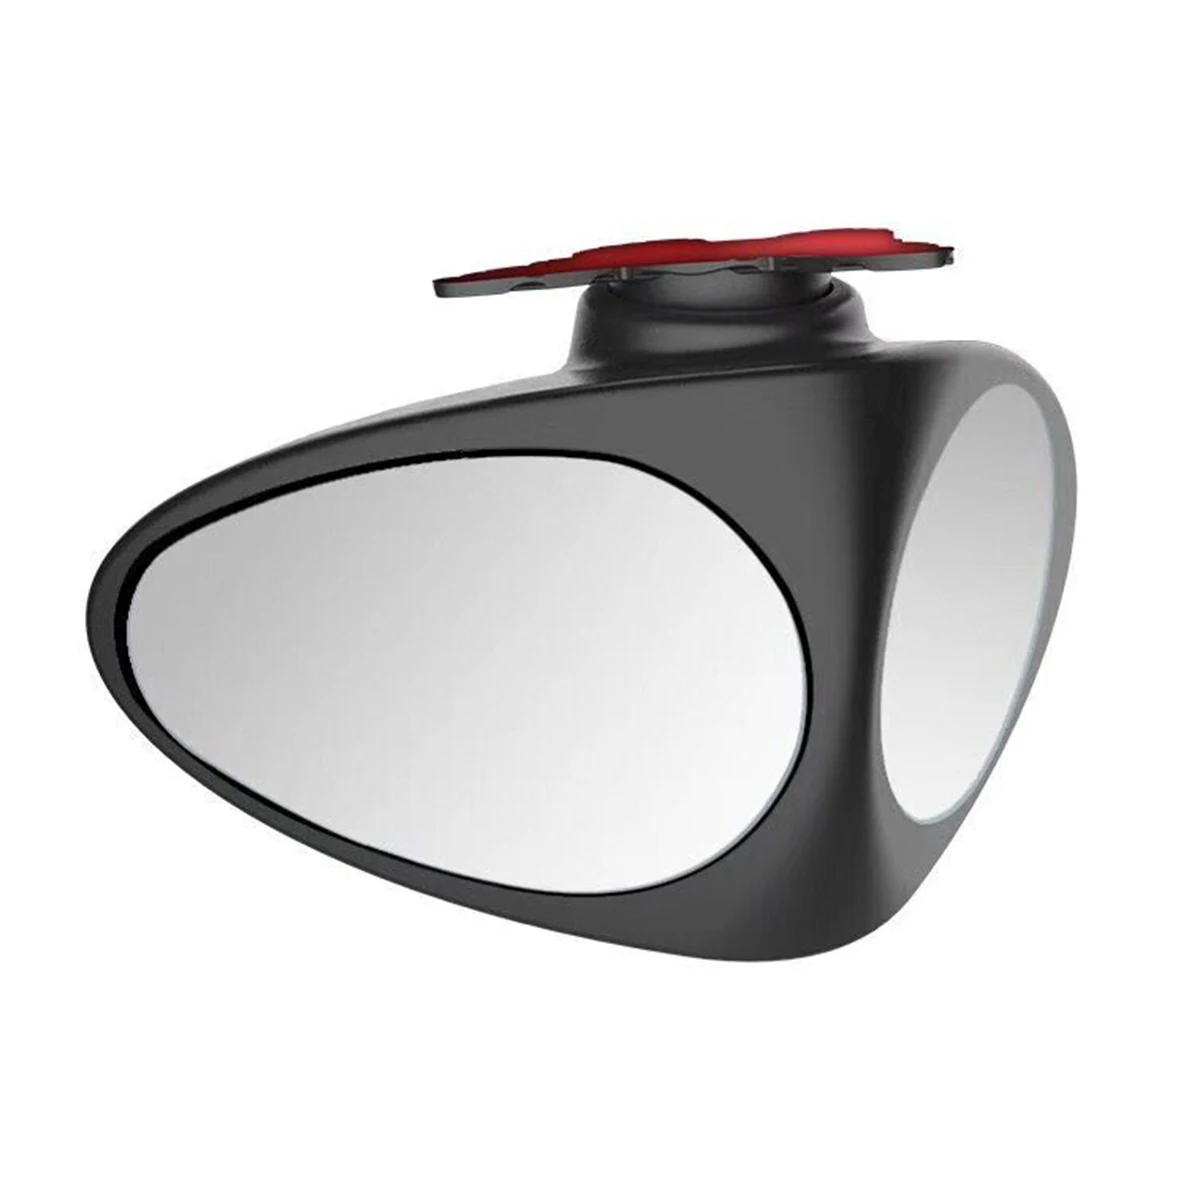 

Популярное регулируемое выпуклое зеркало заднего вида с поворотом на 360 градусов, Автомобильное Зеркало для слепых зон, широкоугольное зер...